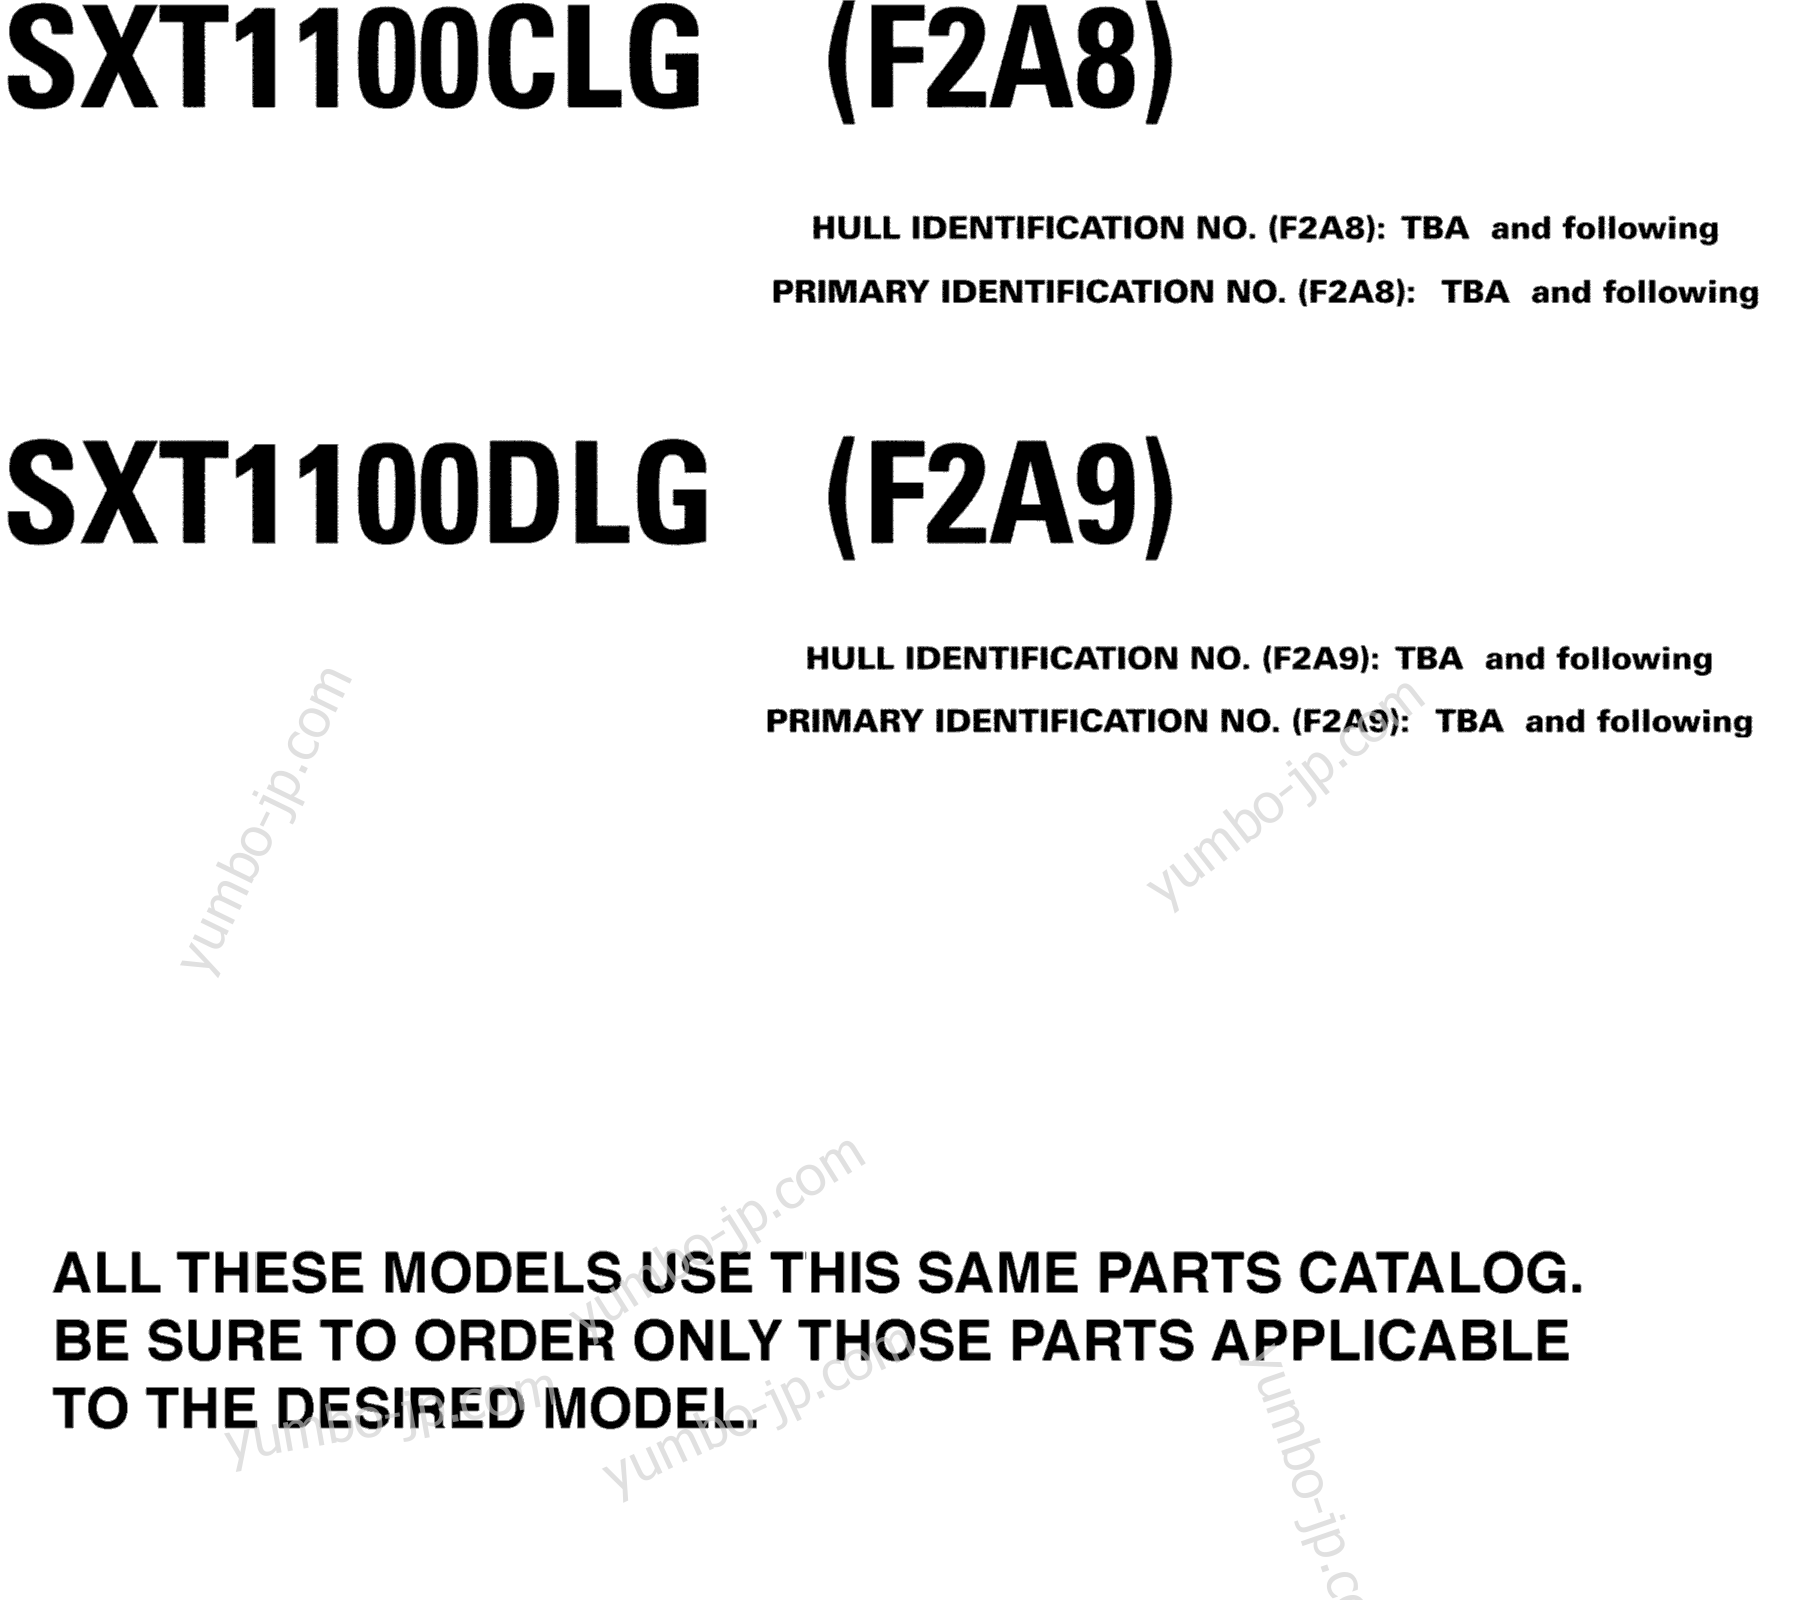 Models In This Catalog for boats YAMAHA SX230 HO CA & NY (SXT1100CLG) CA 2008 year